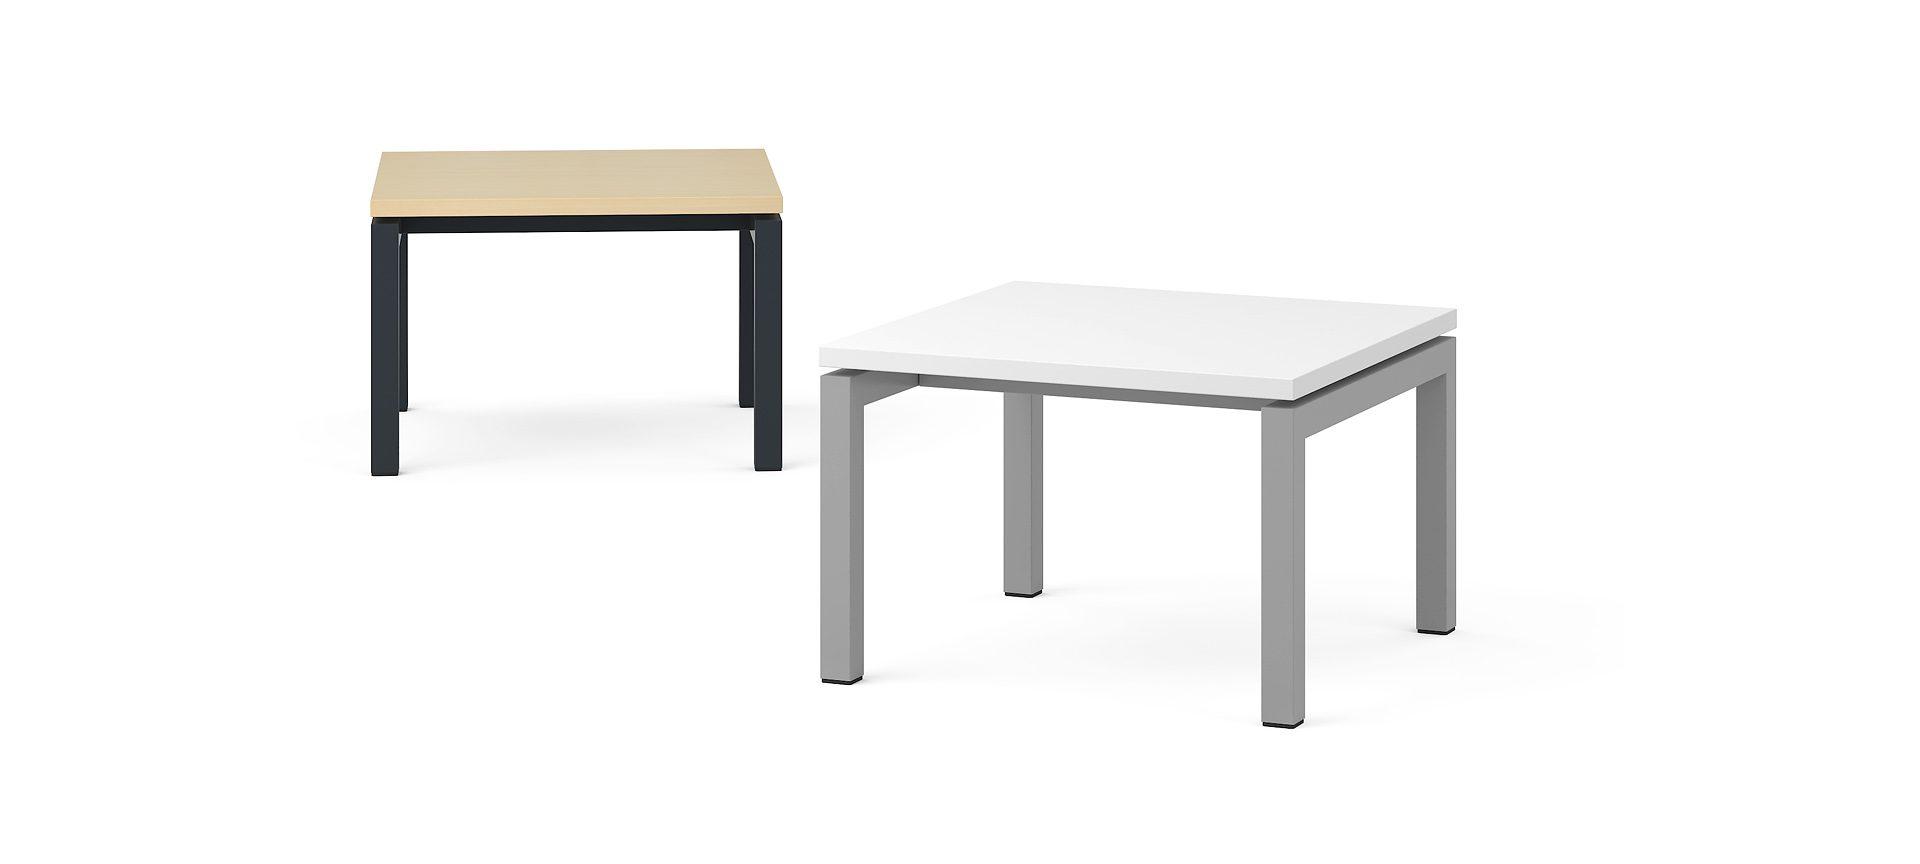 Кофейный столик NOVA, 600x600x400 мм, N2 - Серый кубанит меламин, A - Черная